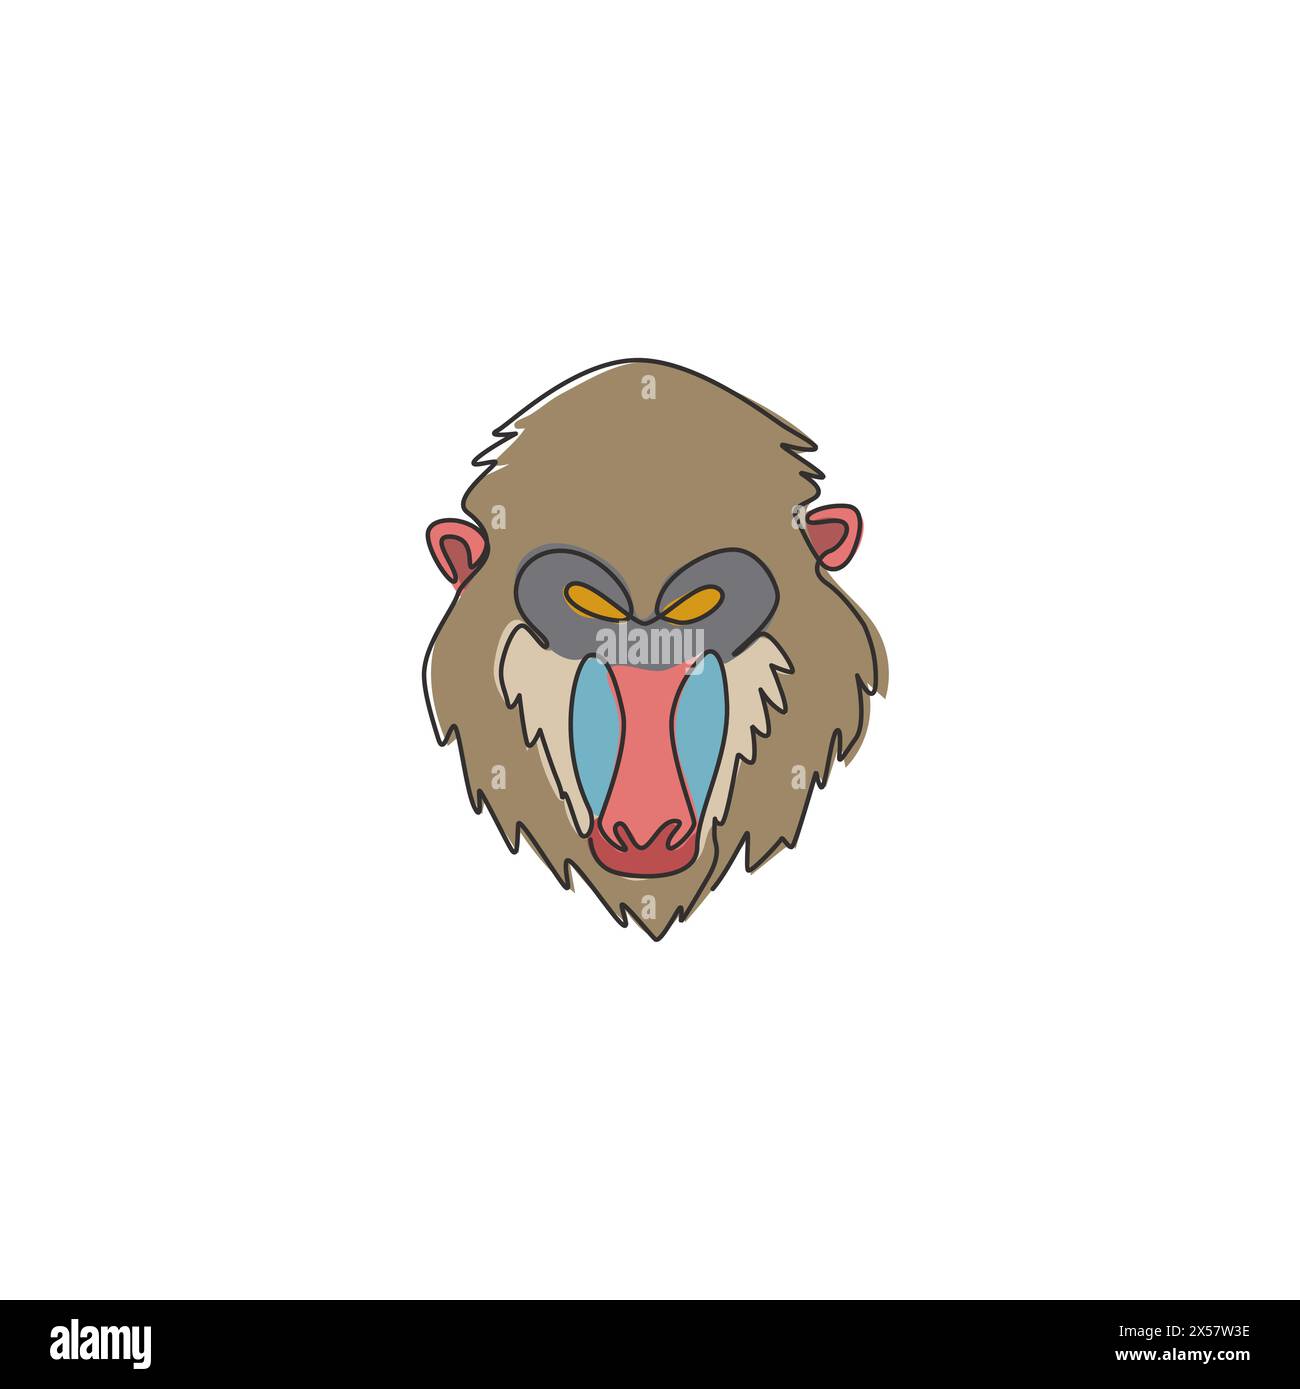 Un disegno a linea singola di una testa mandrino esotica per l'identità del logo aziendale. Il concetto di mascotte con il volto delle scimmie più grande per l'icona del parco safari nazionale. Camera moderna Illustrazione Vettoriale